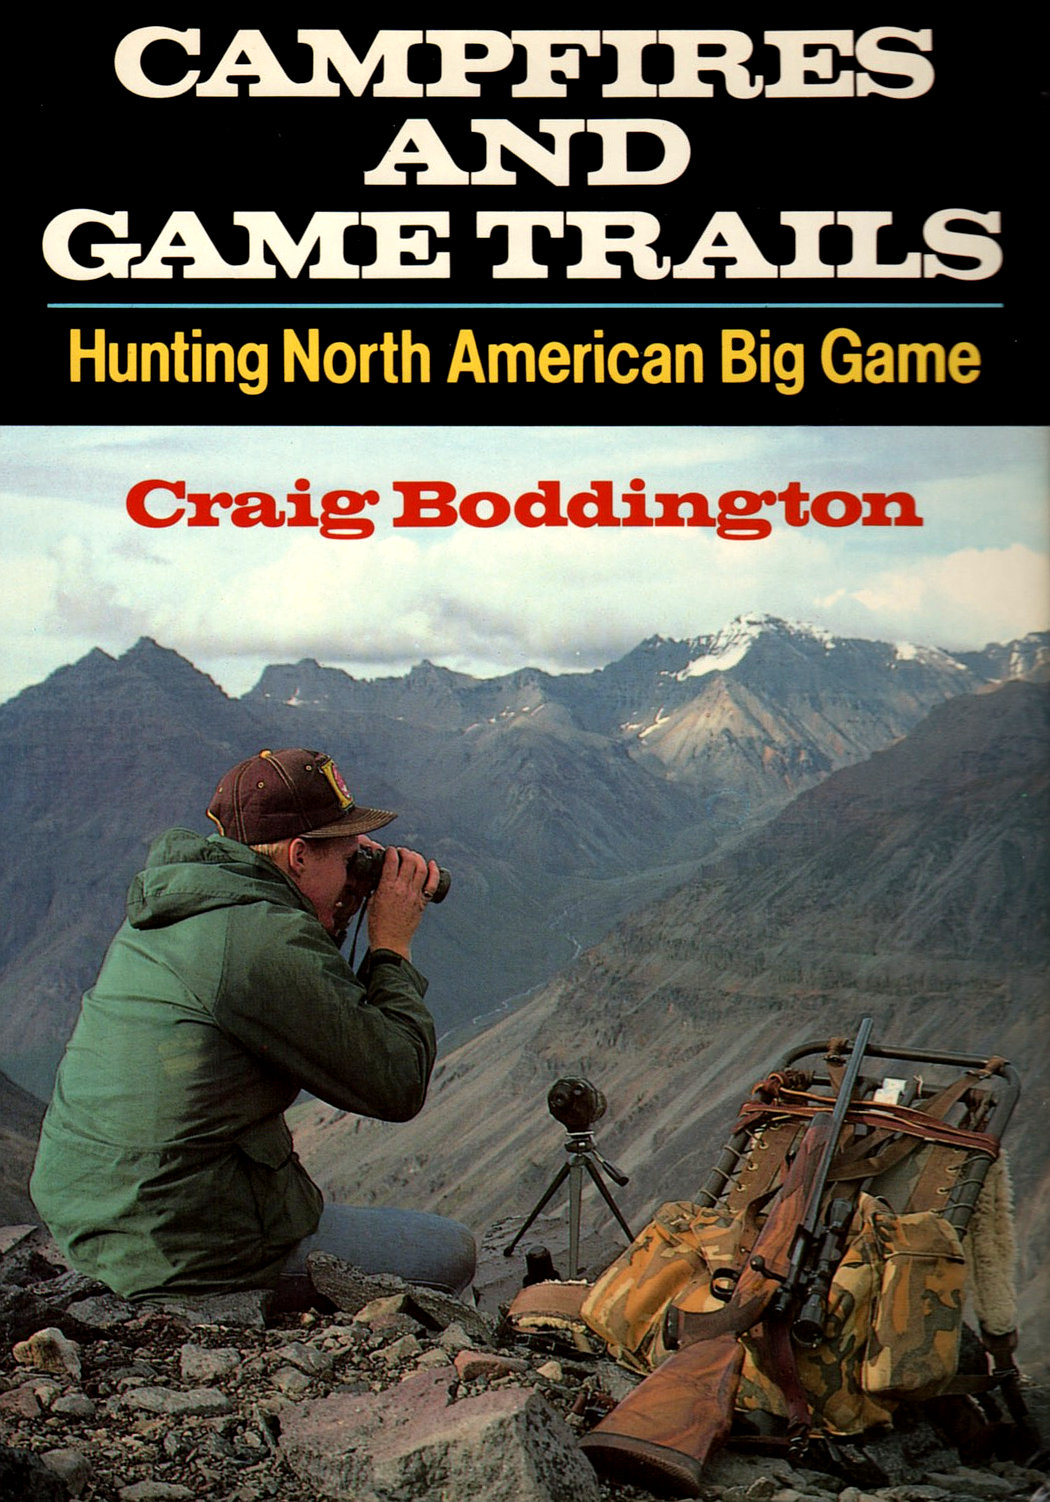 Campfires and Game Trails (Craig Boddington)